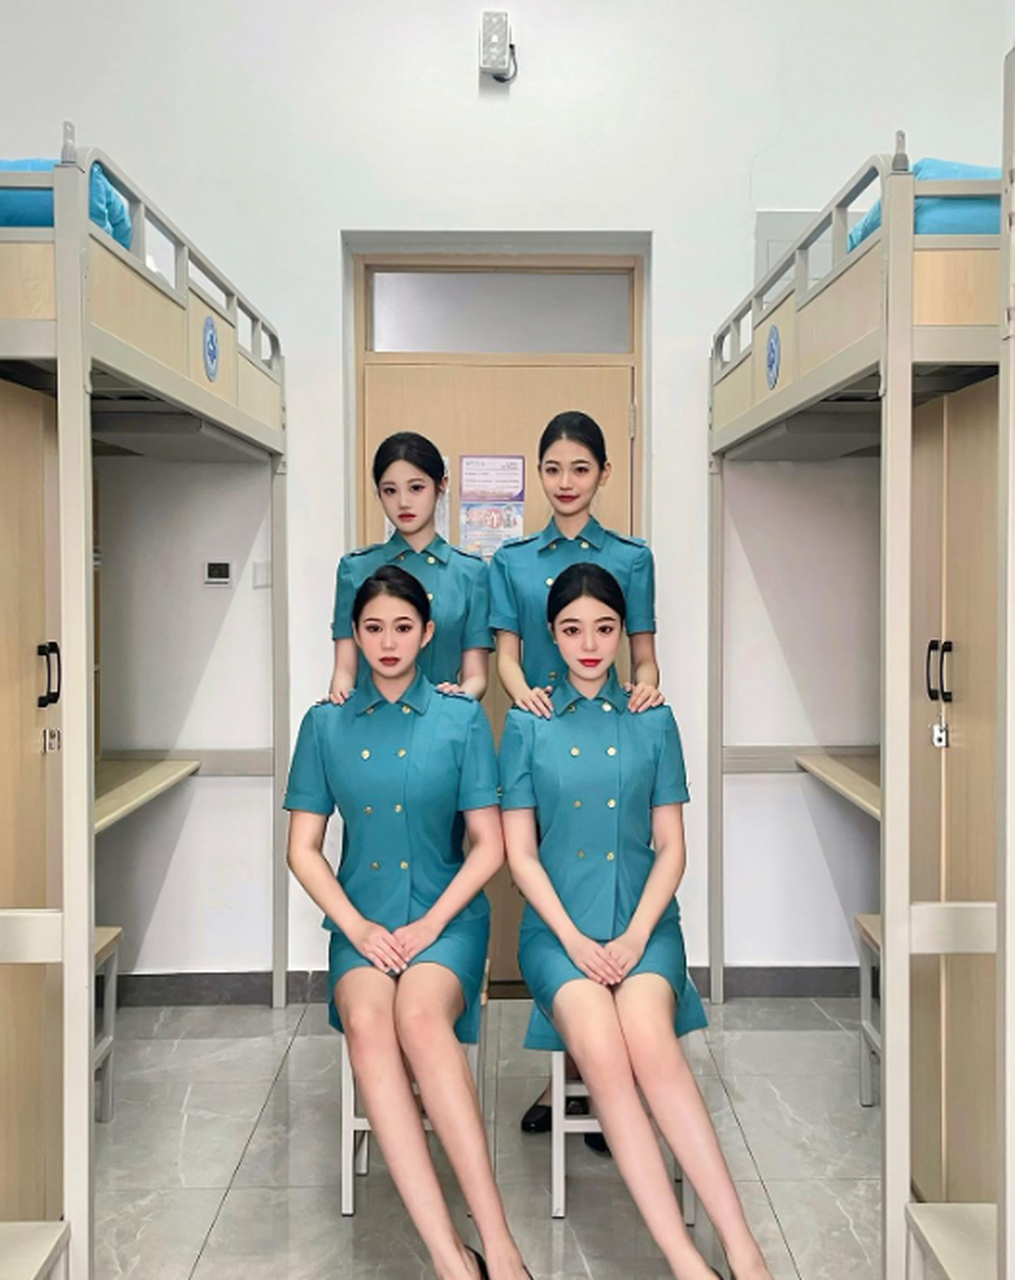 中国民航大学生在宿舍拍的合照